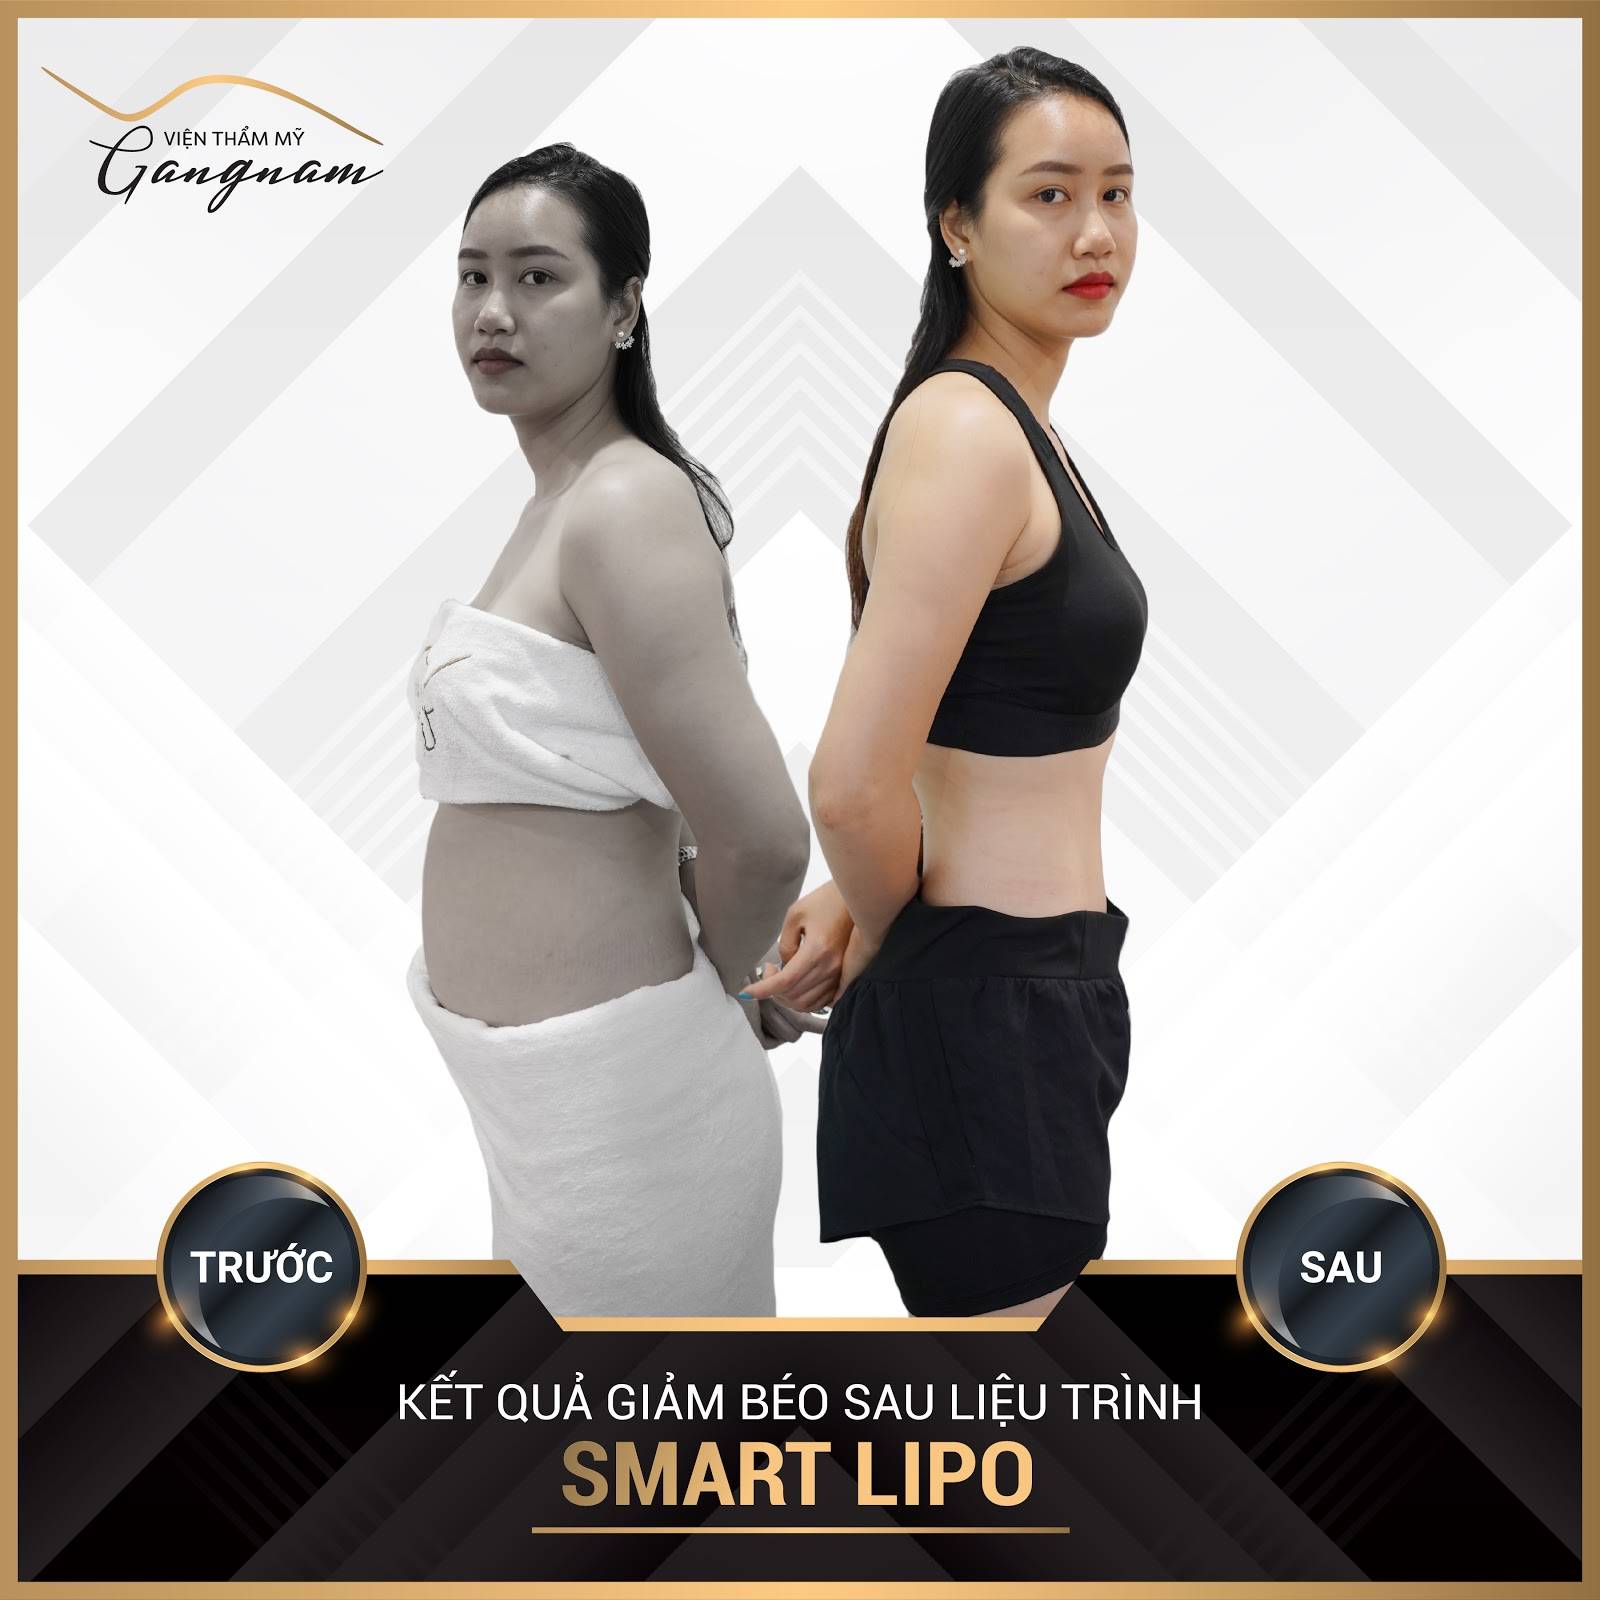 Chị Linh (29 tuổi) giảm mỡ phần bắp tay, bụng eo hiệu quả với Smart Lipo